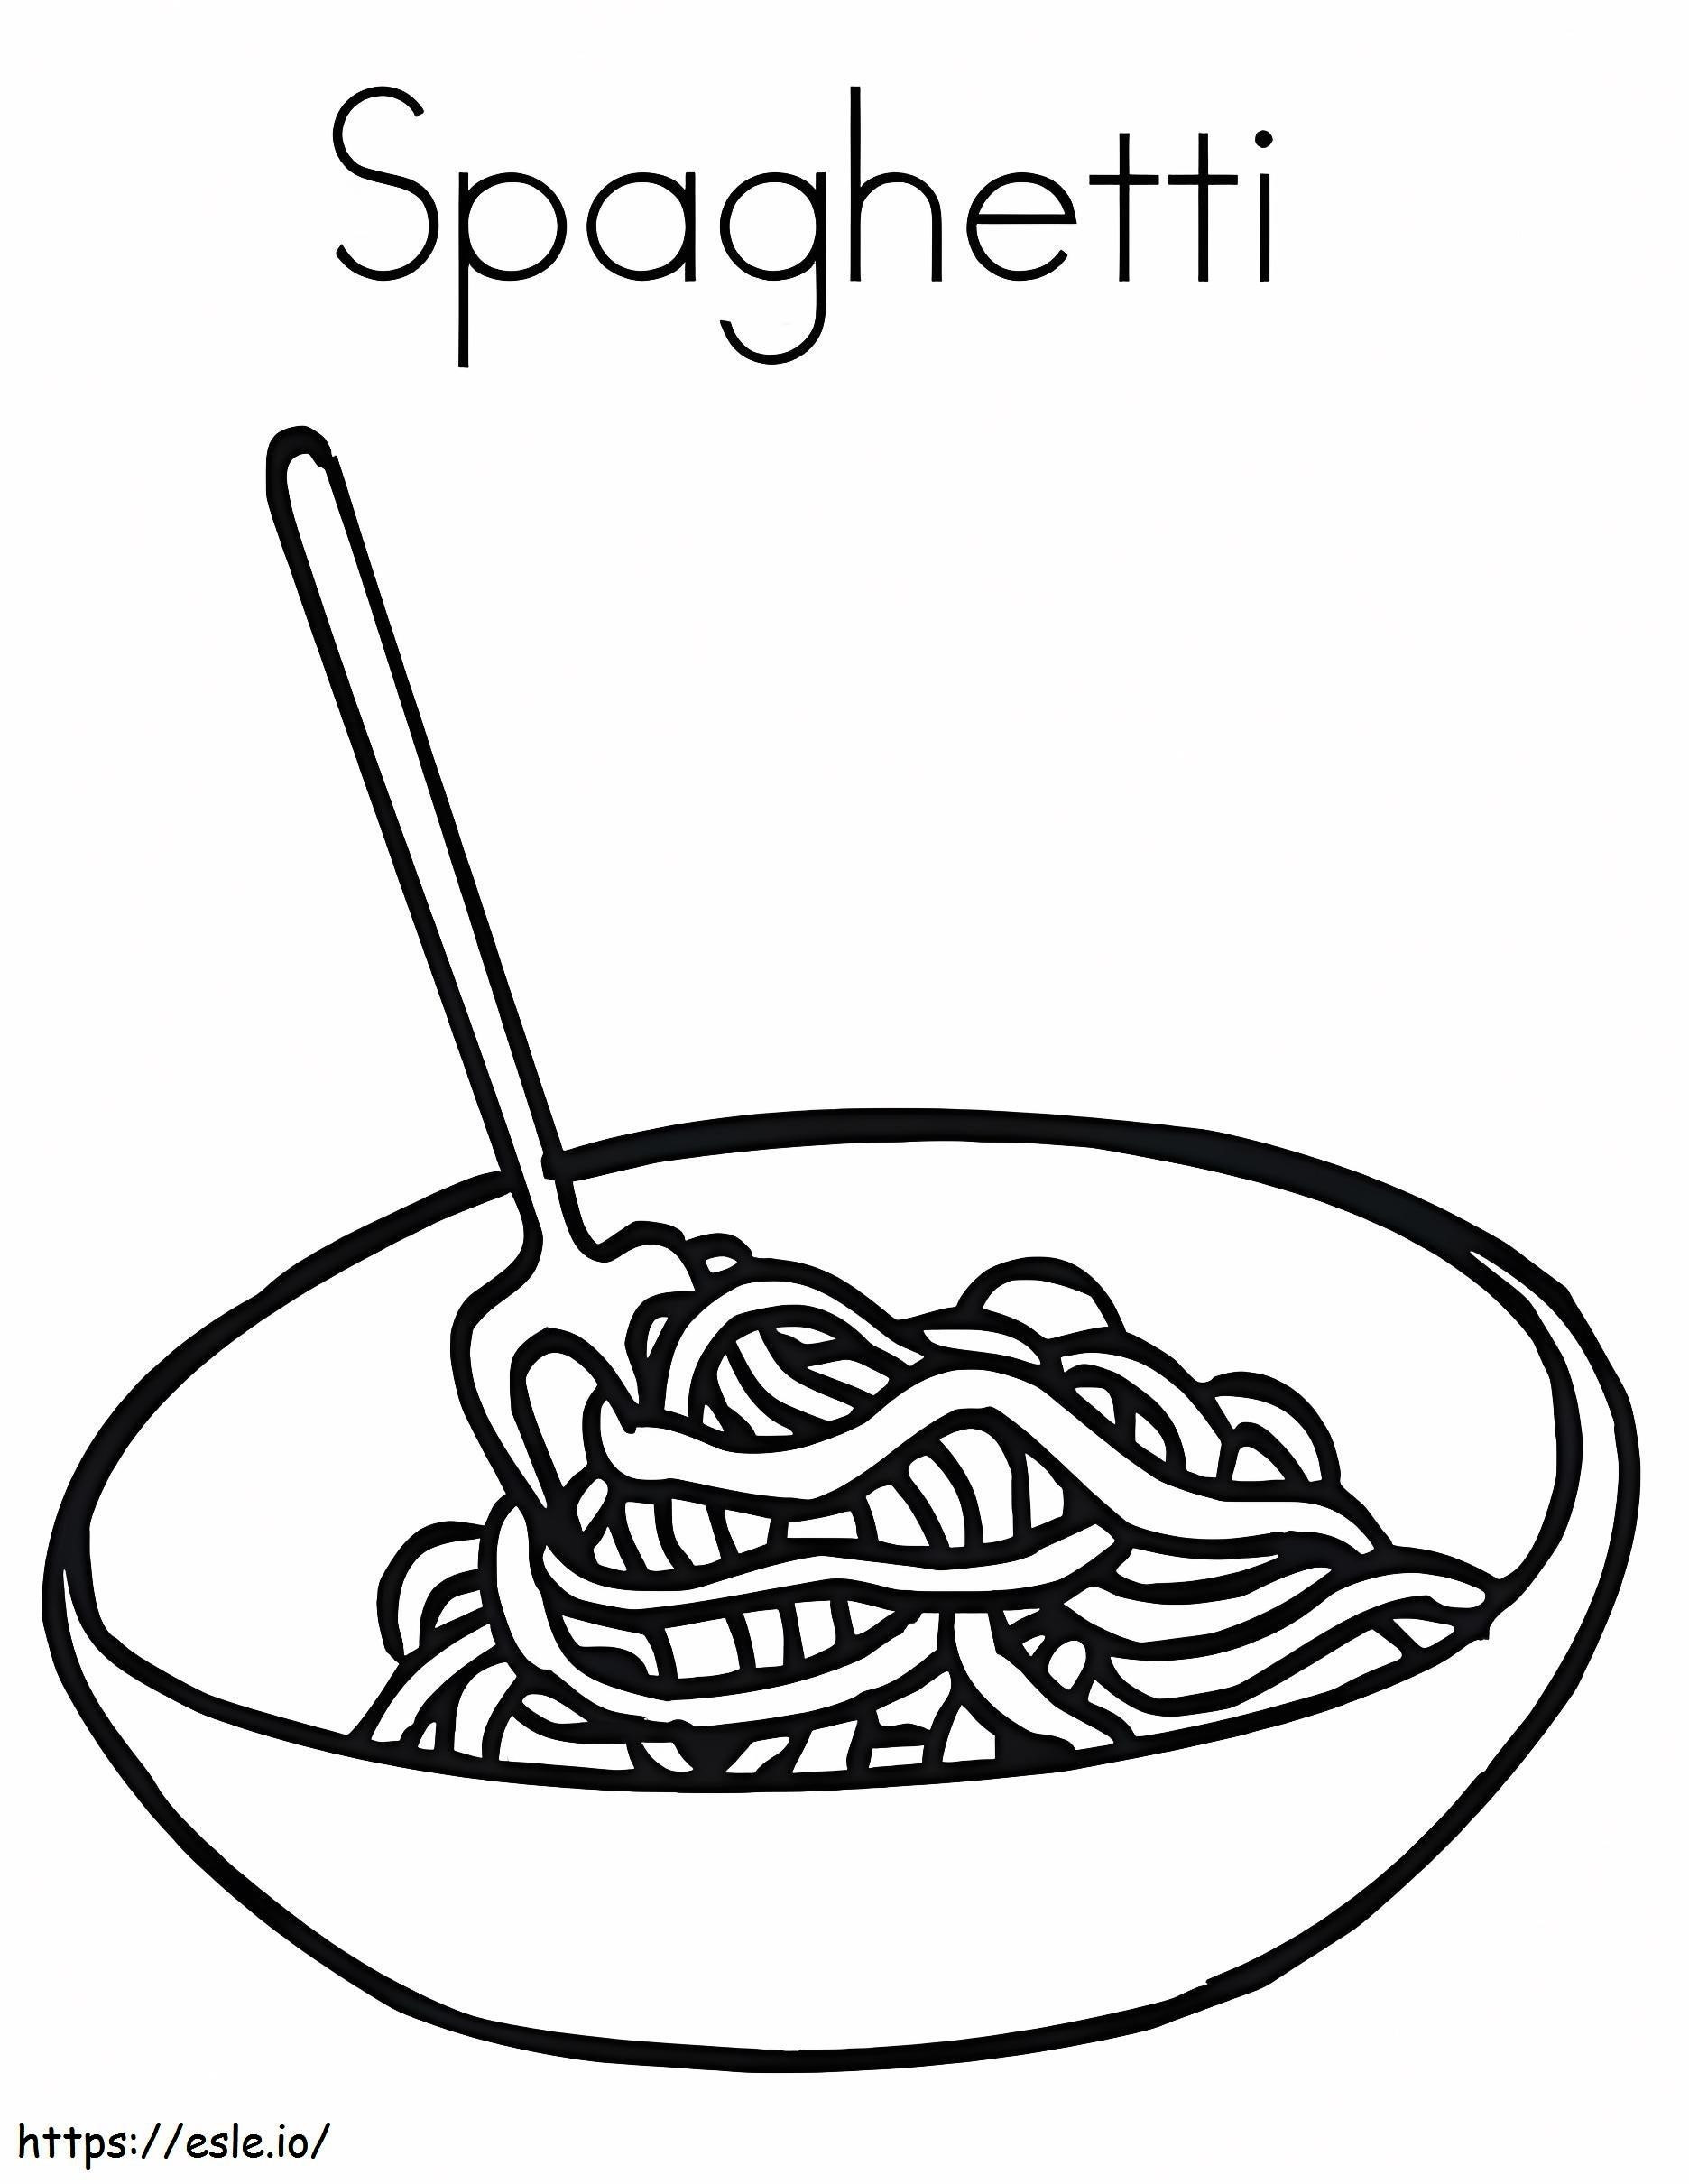 スパゲッティパスタ ぬりえ - 塗り絵